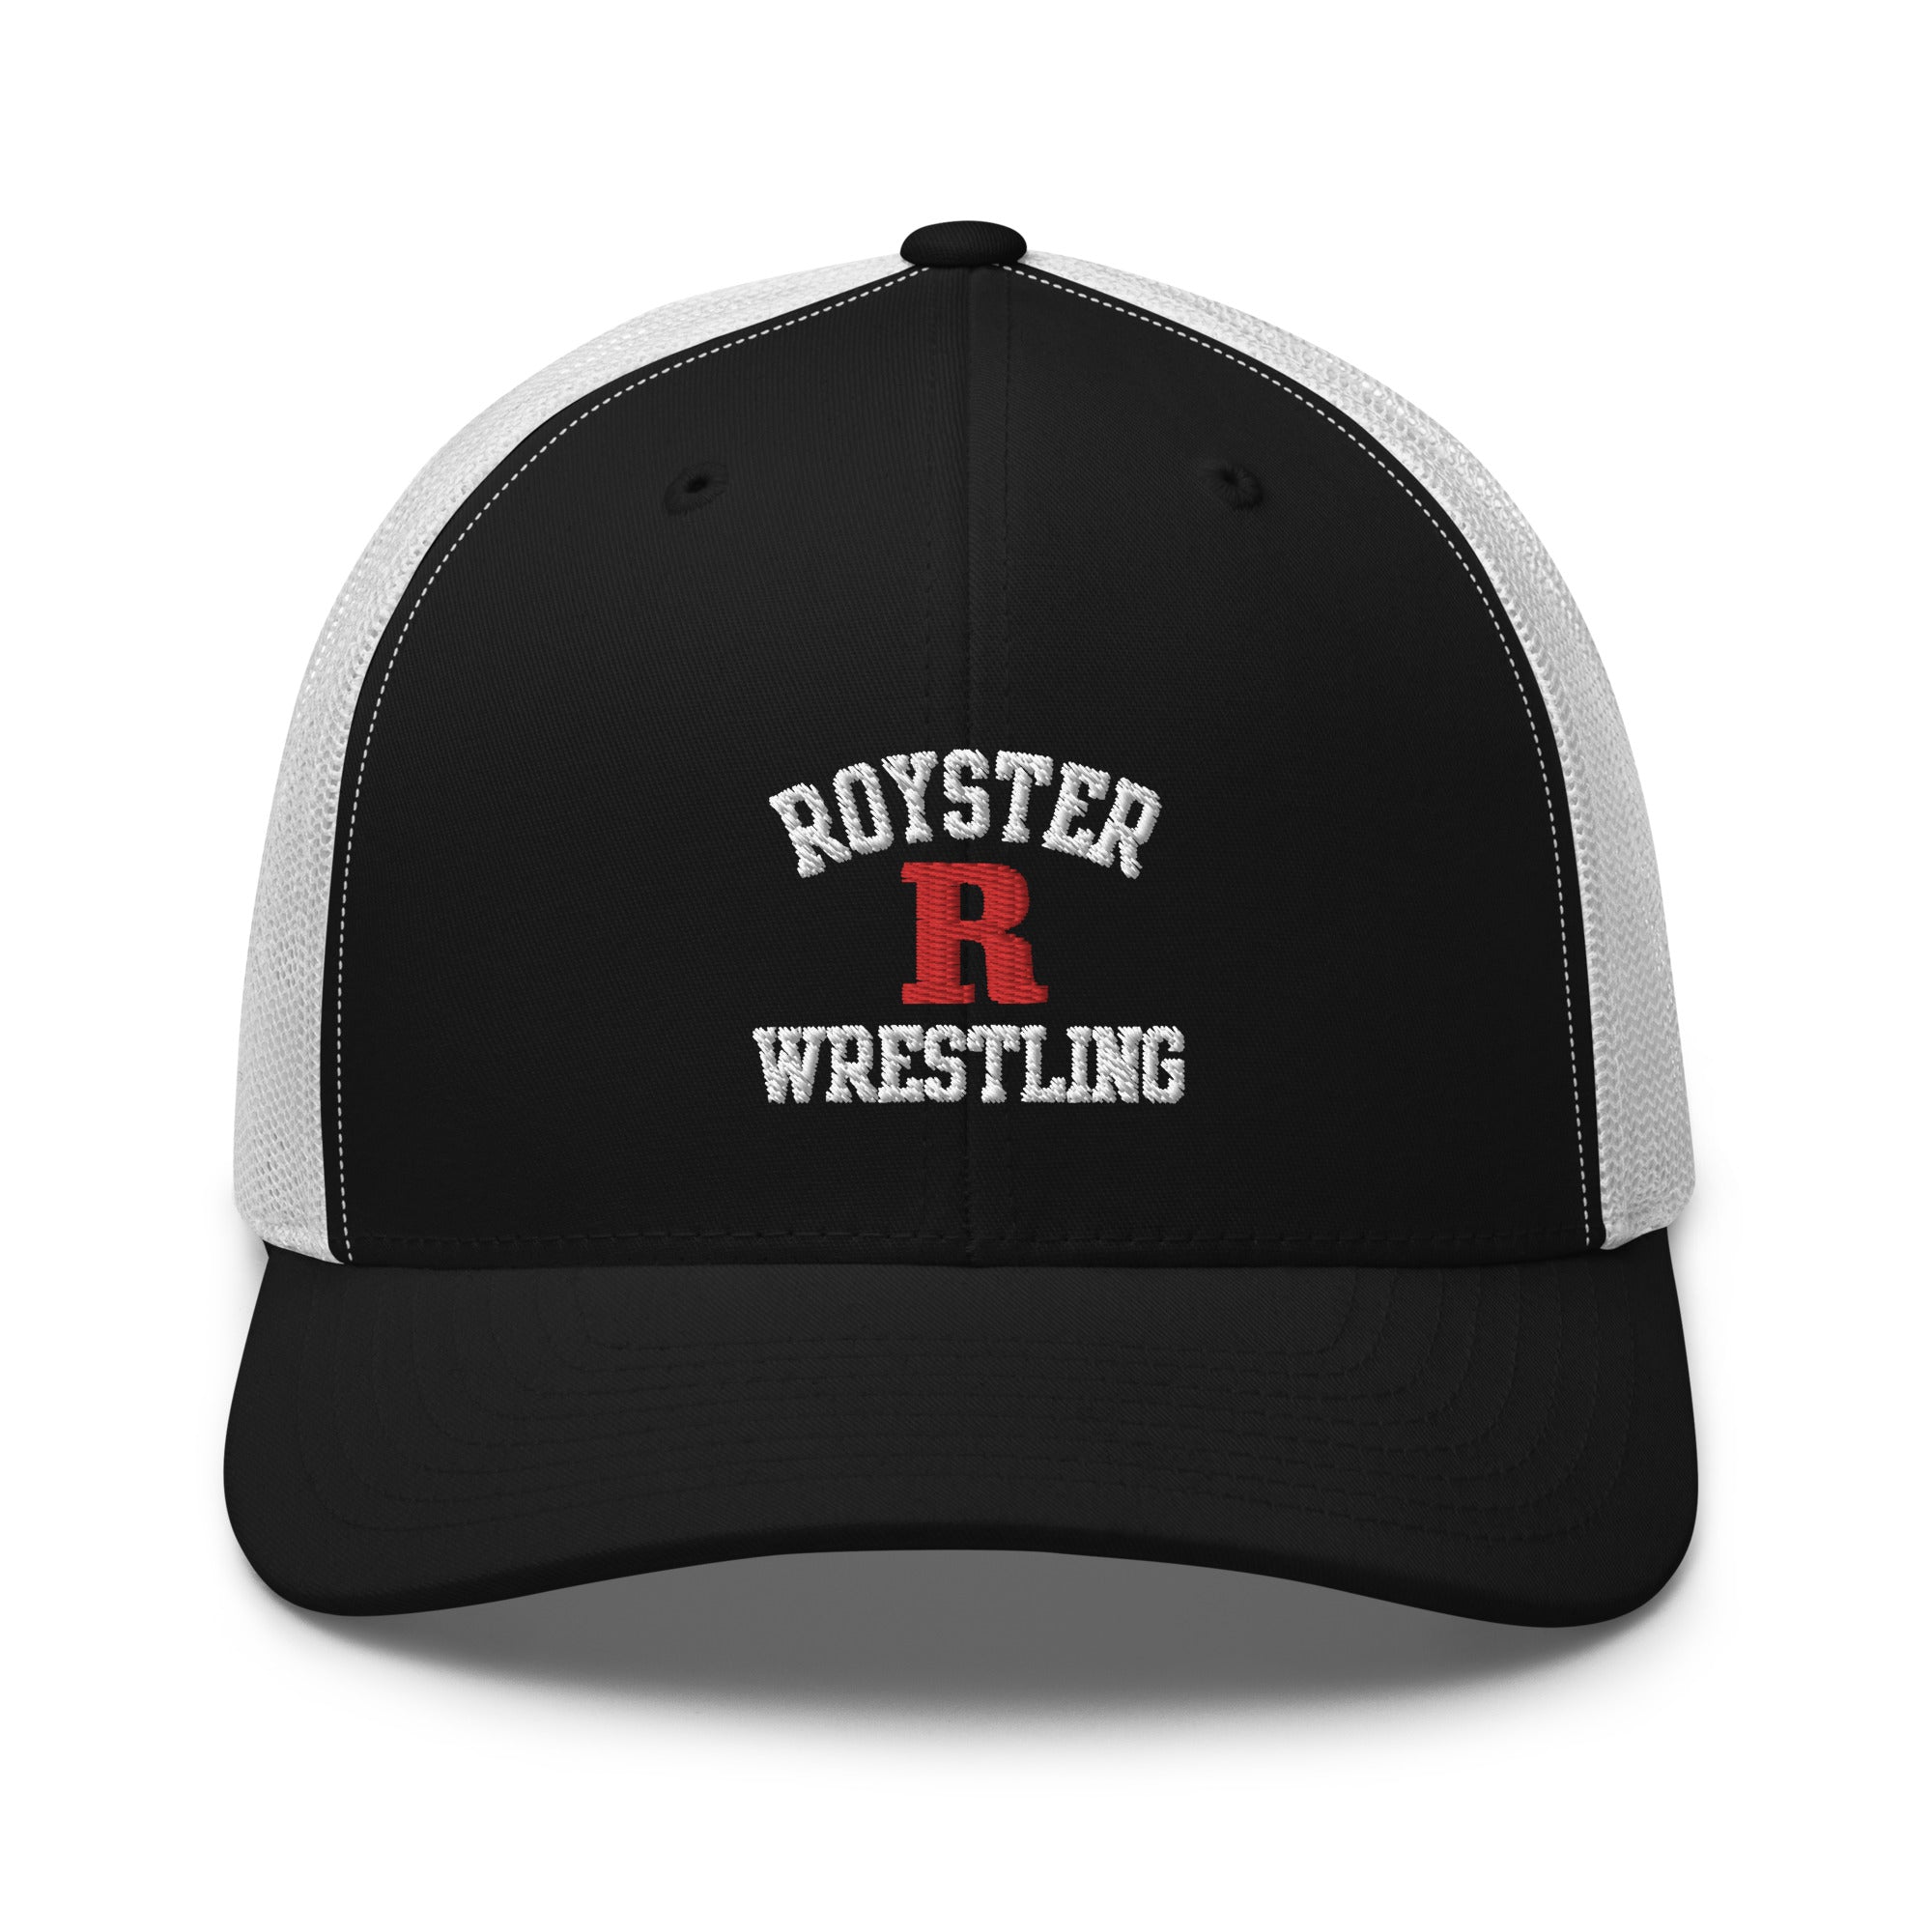 Royster Rockets Wrestling Retro Trucker Hat